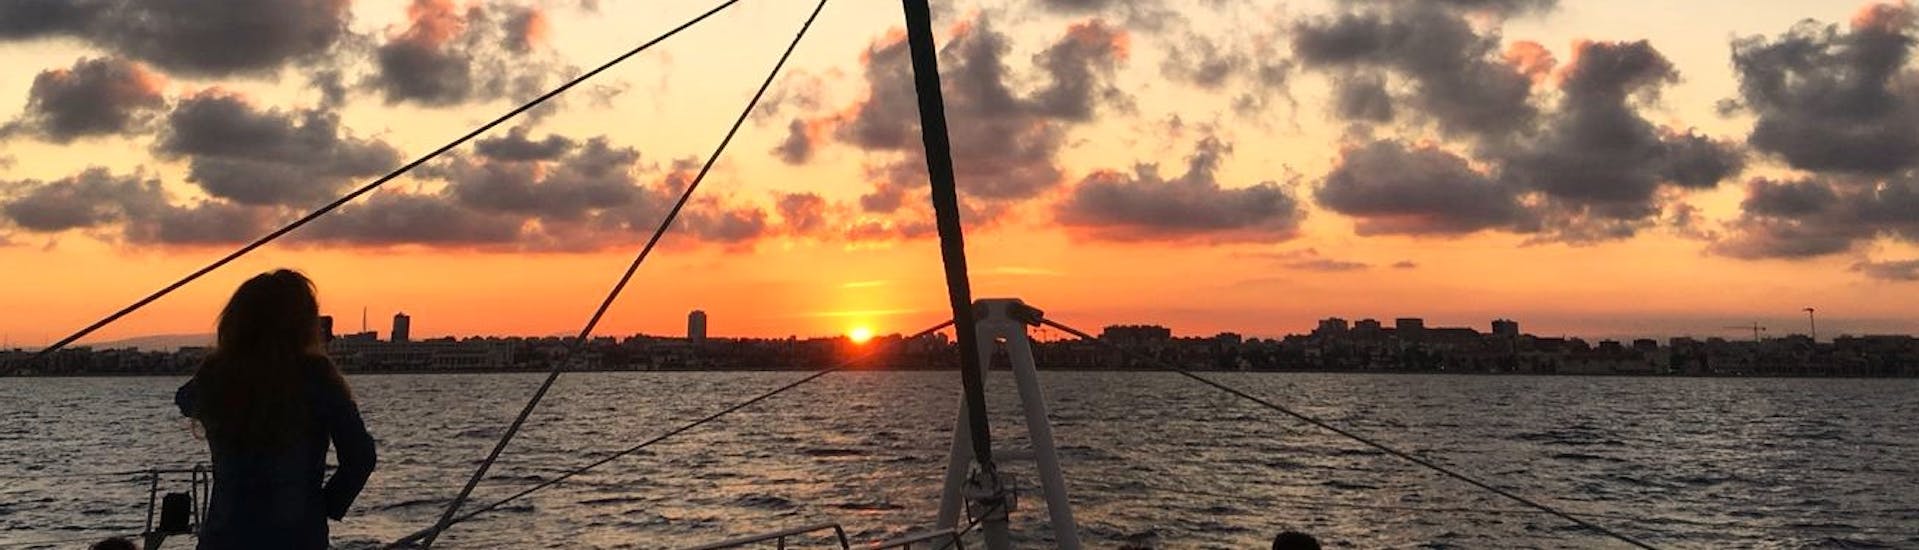 Een prachtige zonsondergang over de baai van Malaga, met rode en oranje tinten tijdens een catamaran trip met Mundo Marino Costa del Sol.